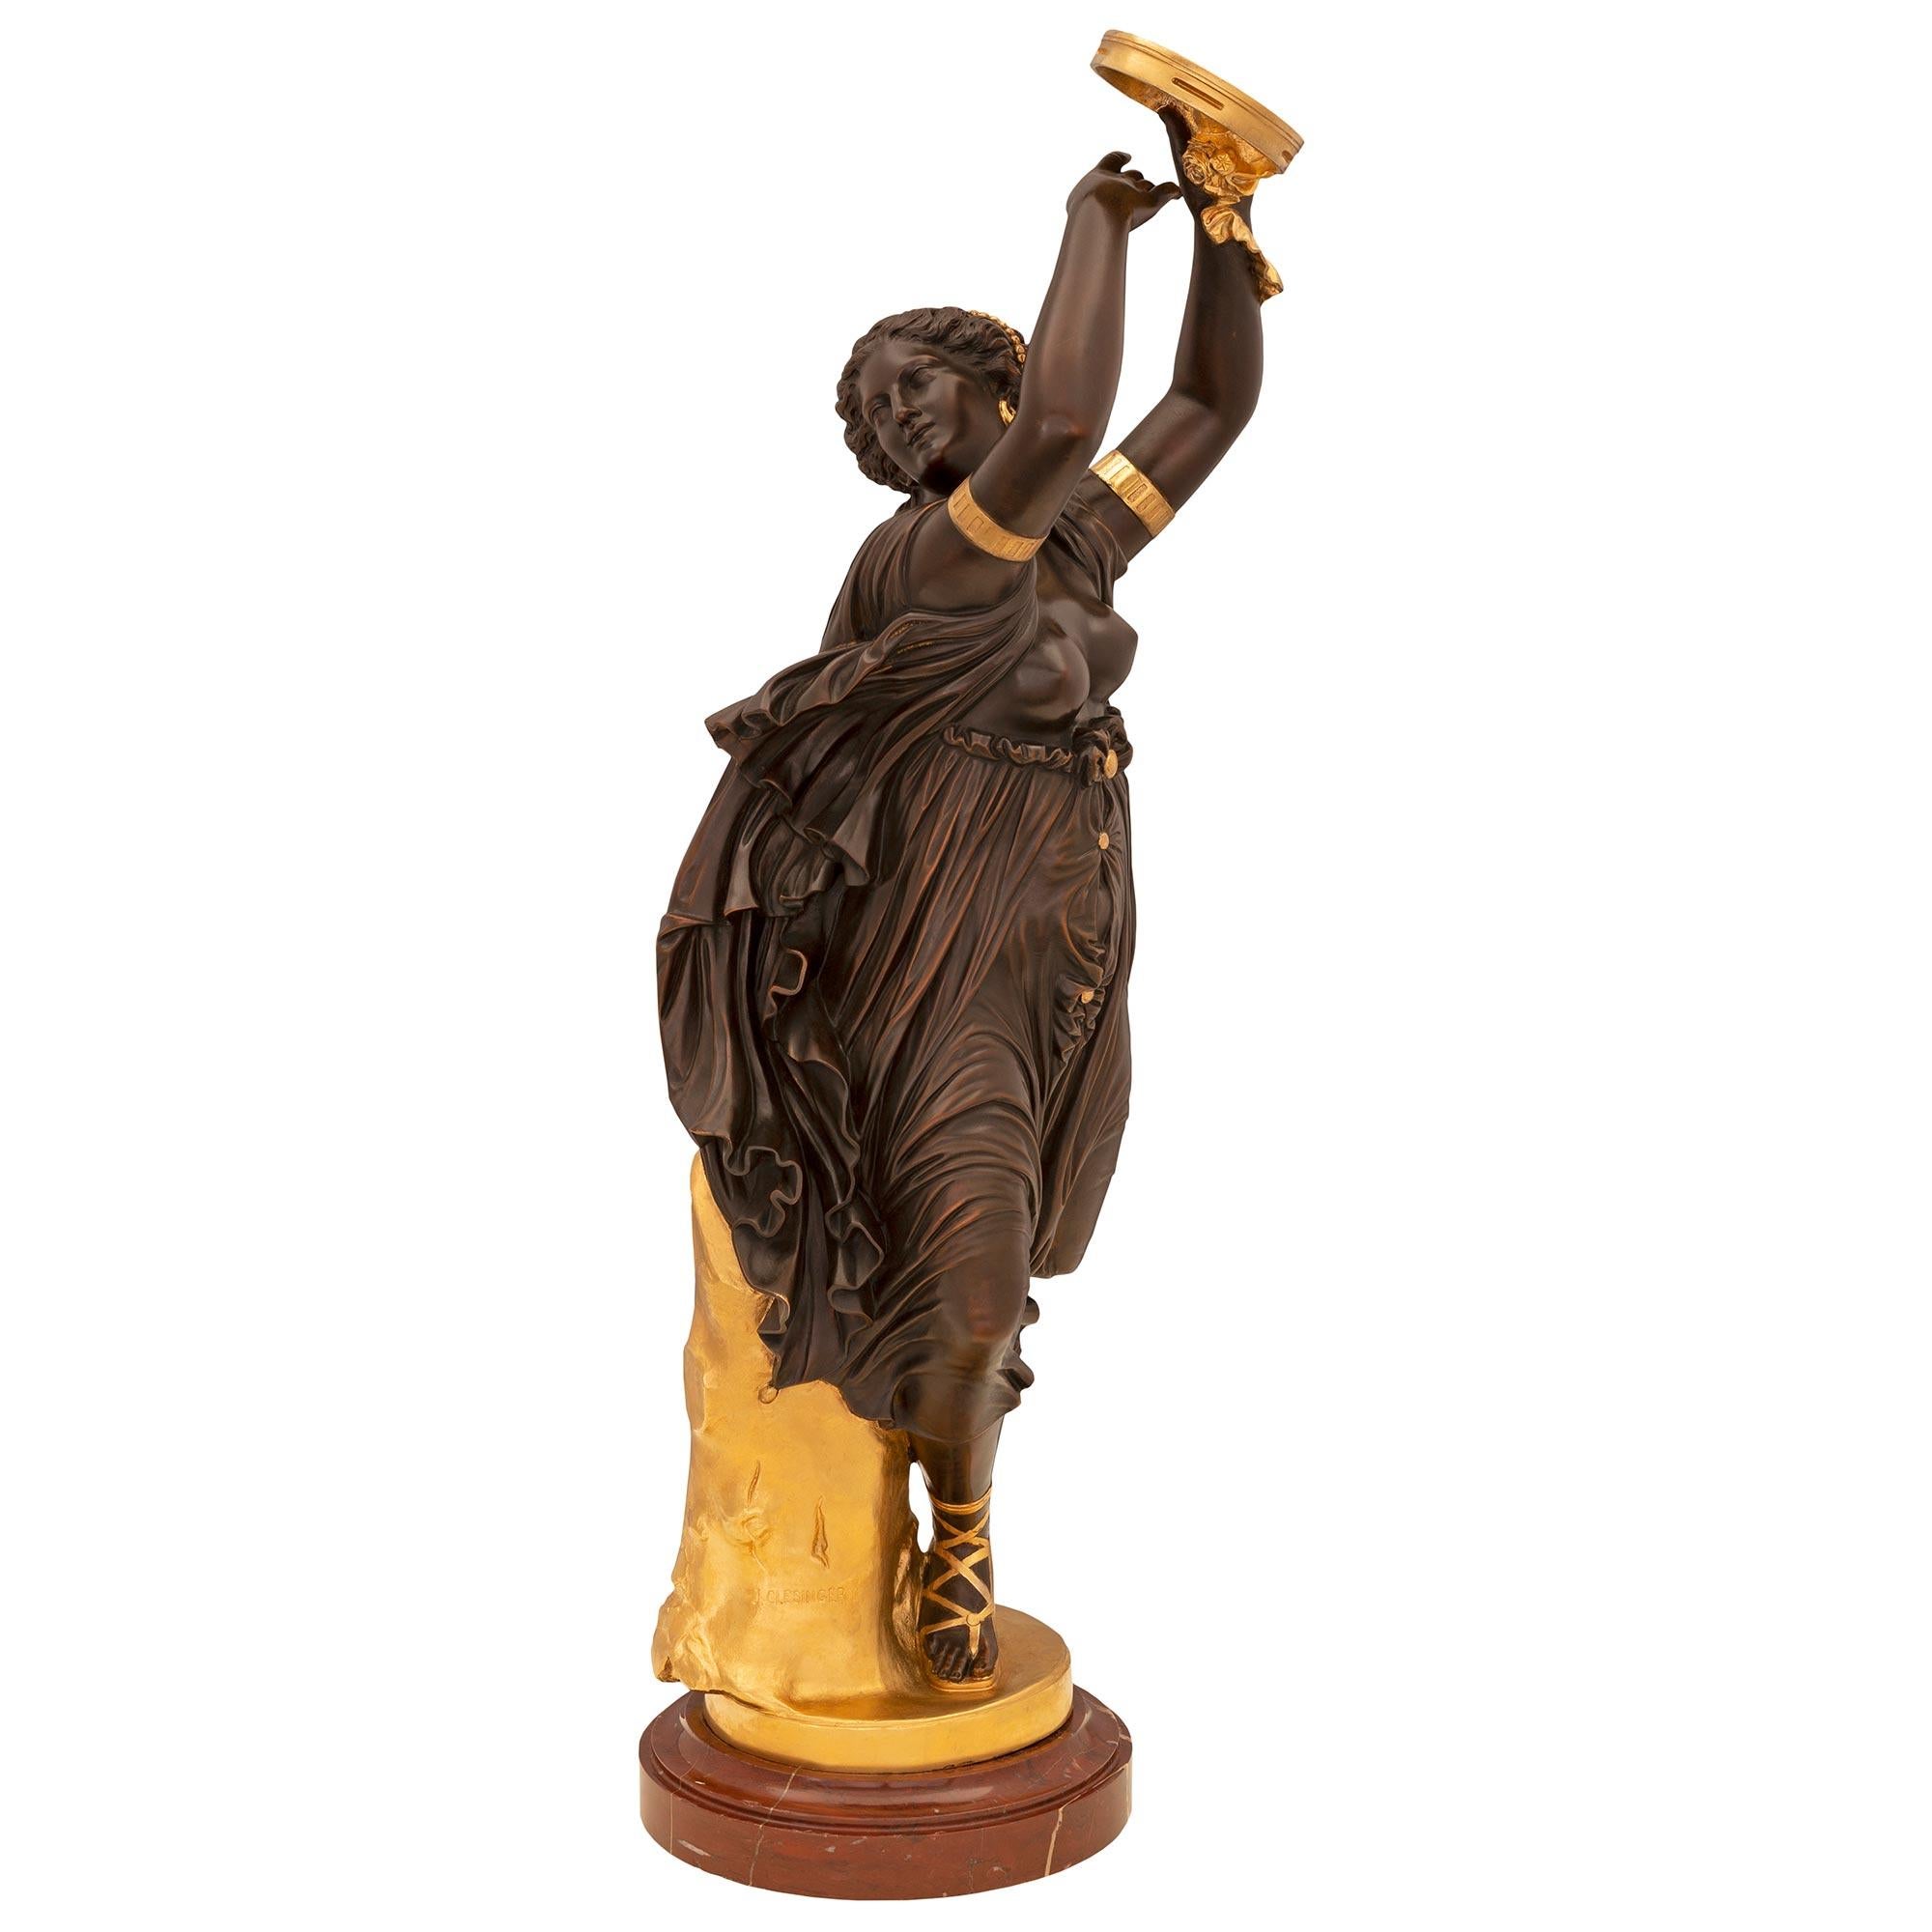 Magnifique statue de très haute qualité en bronze patiné, bronze doré et marbre Rouge Royale du XIXe siècle, signée J. Clésinger. La statue est surélevée par un élégant socle circulaire en marbre Rouge Royale avec une fine bordure mouchetée. La